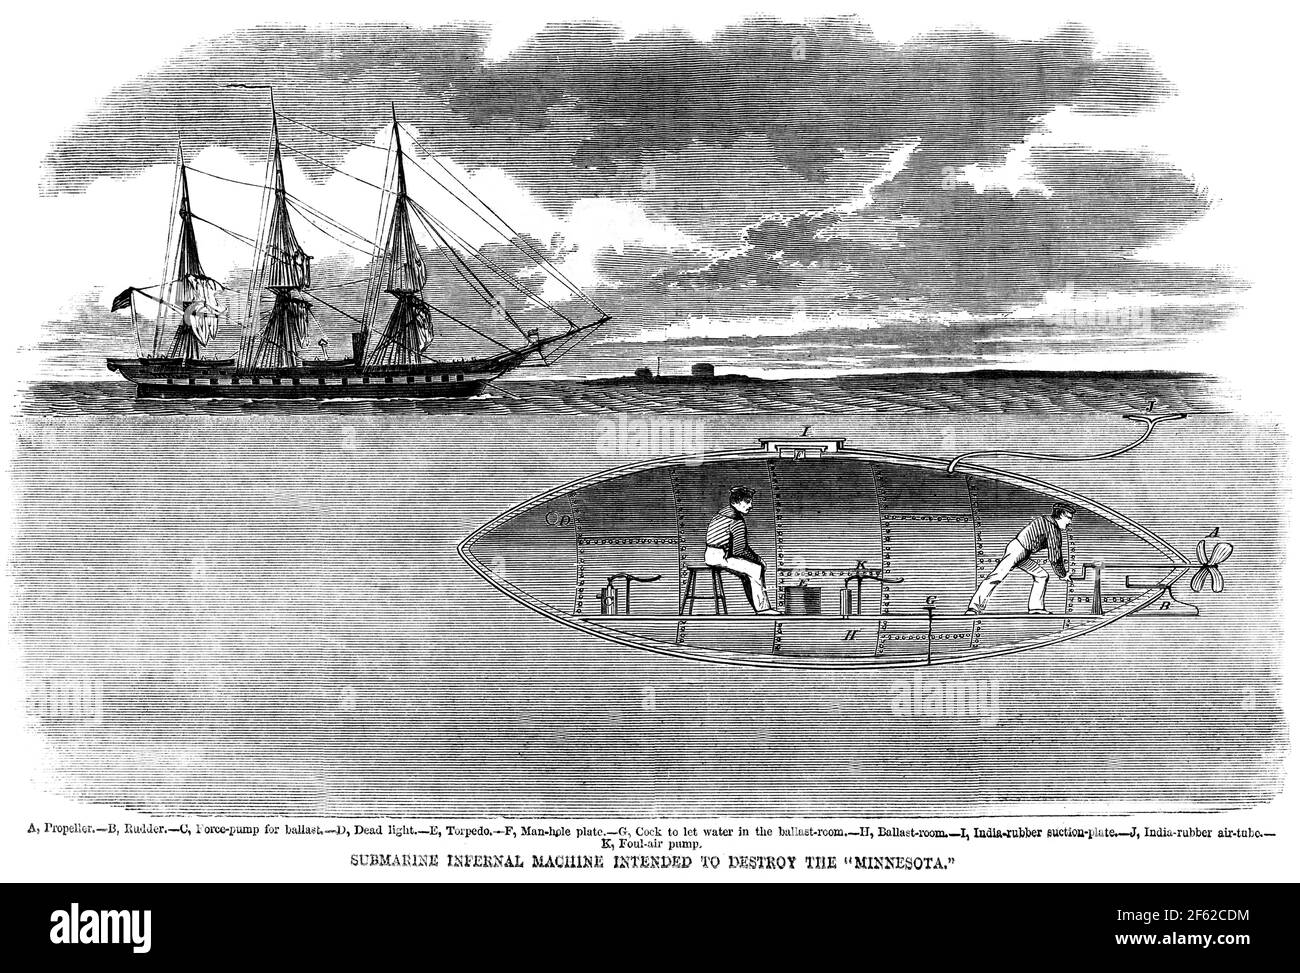 Guerra civile americana, sottomarino confederato, 1861 Foto Stock